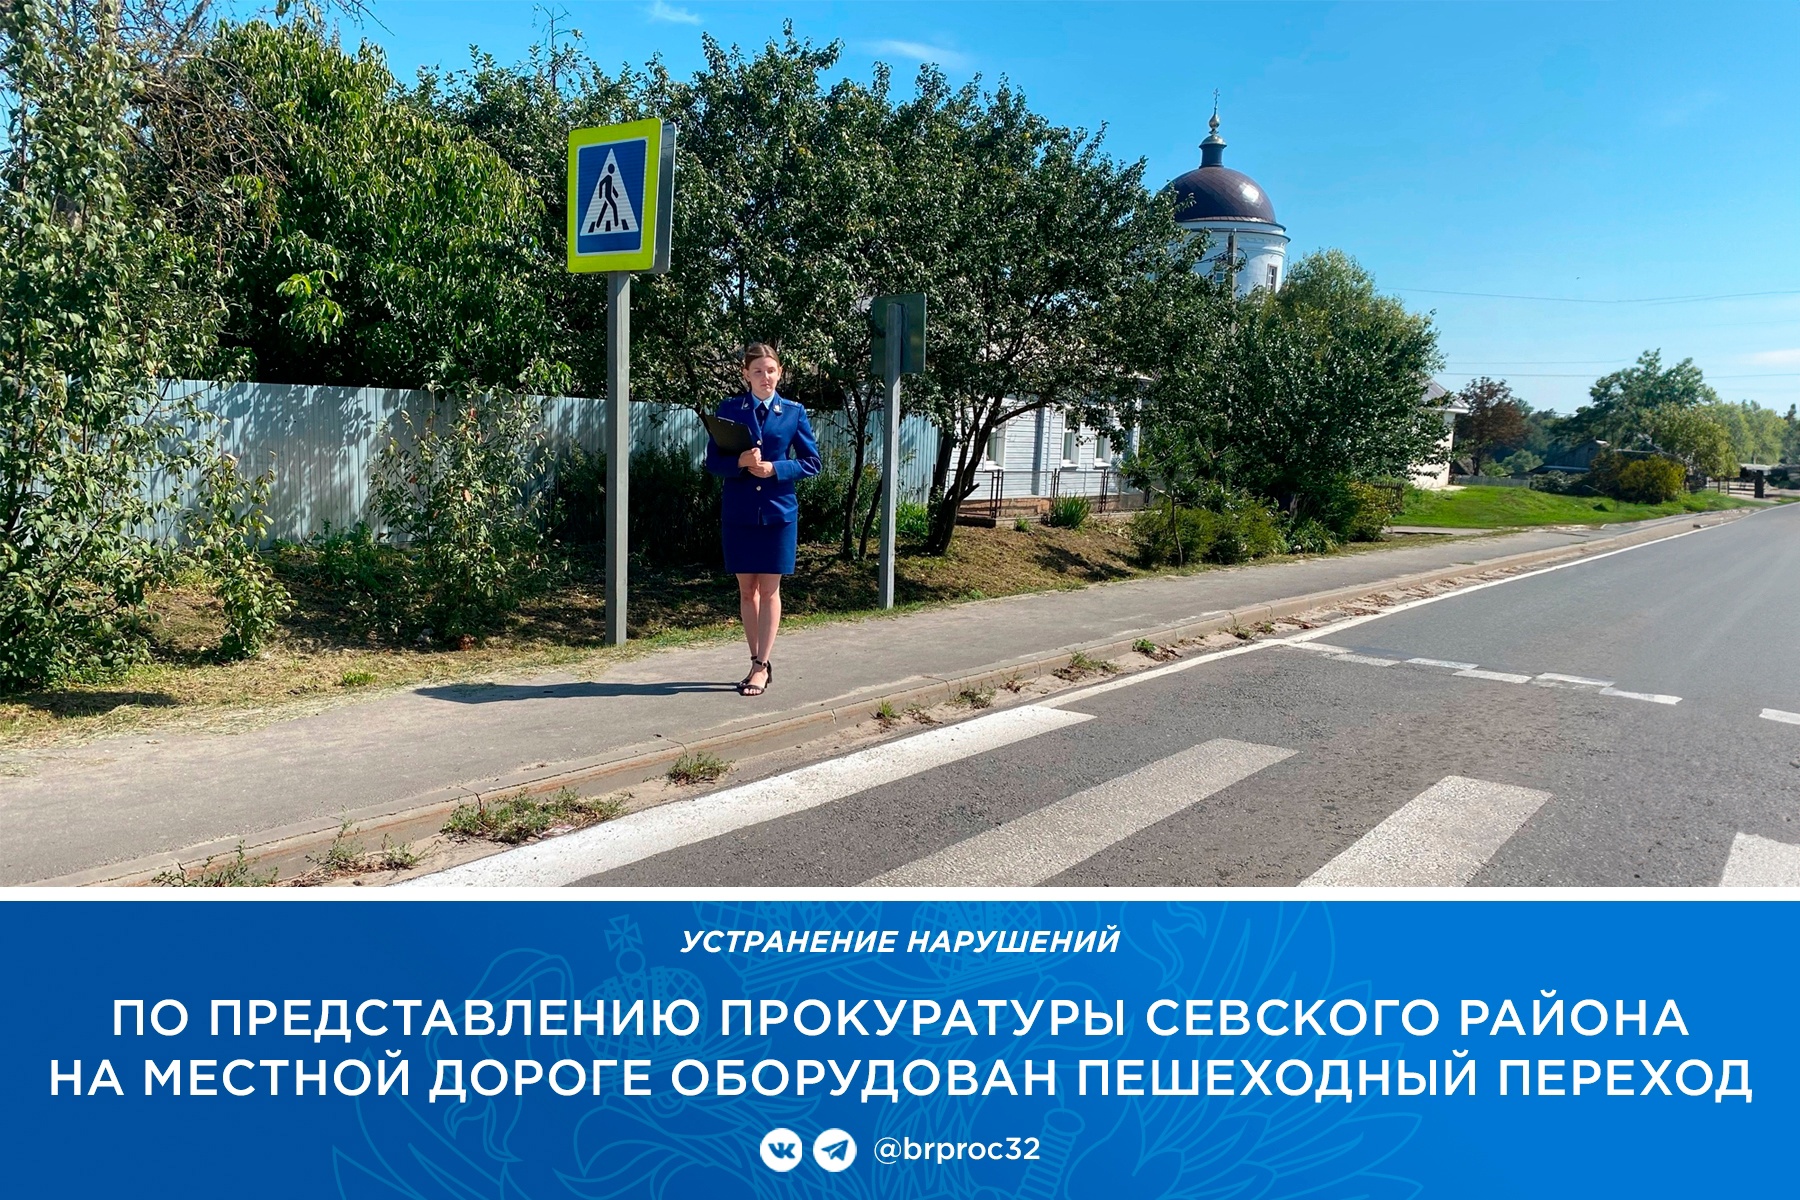 В Севске на опасном участке дороги оборудовали пешеходный переход